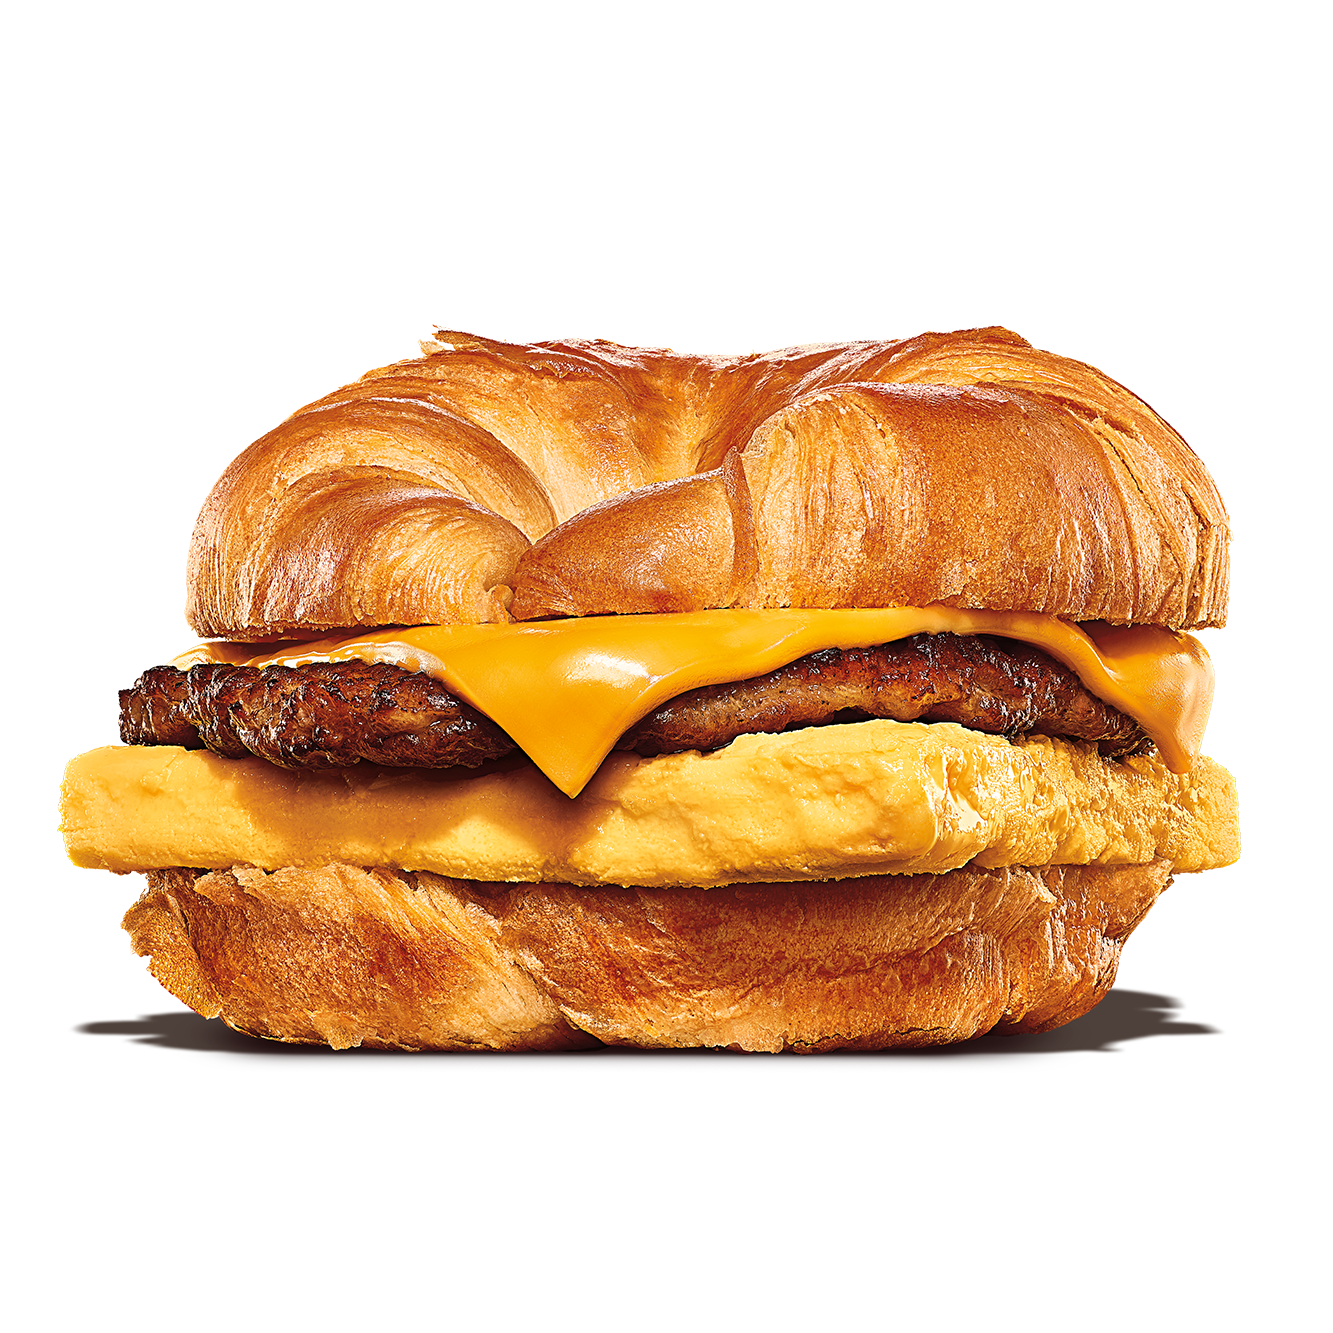 Burger King Napa (707)253-1546